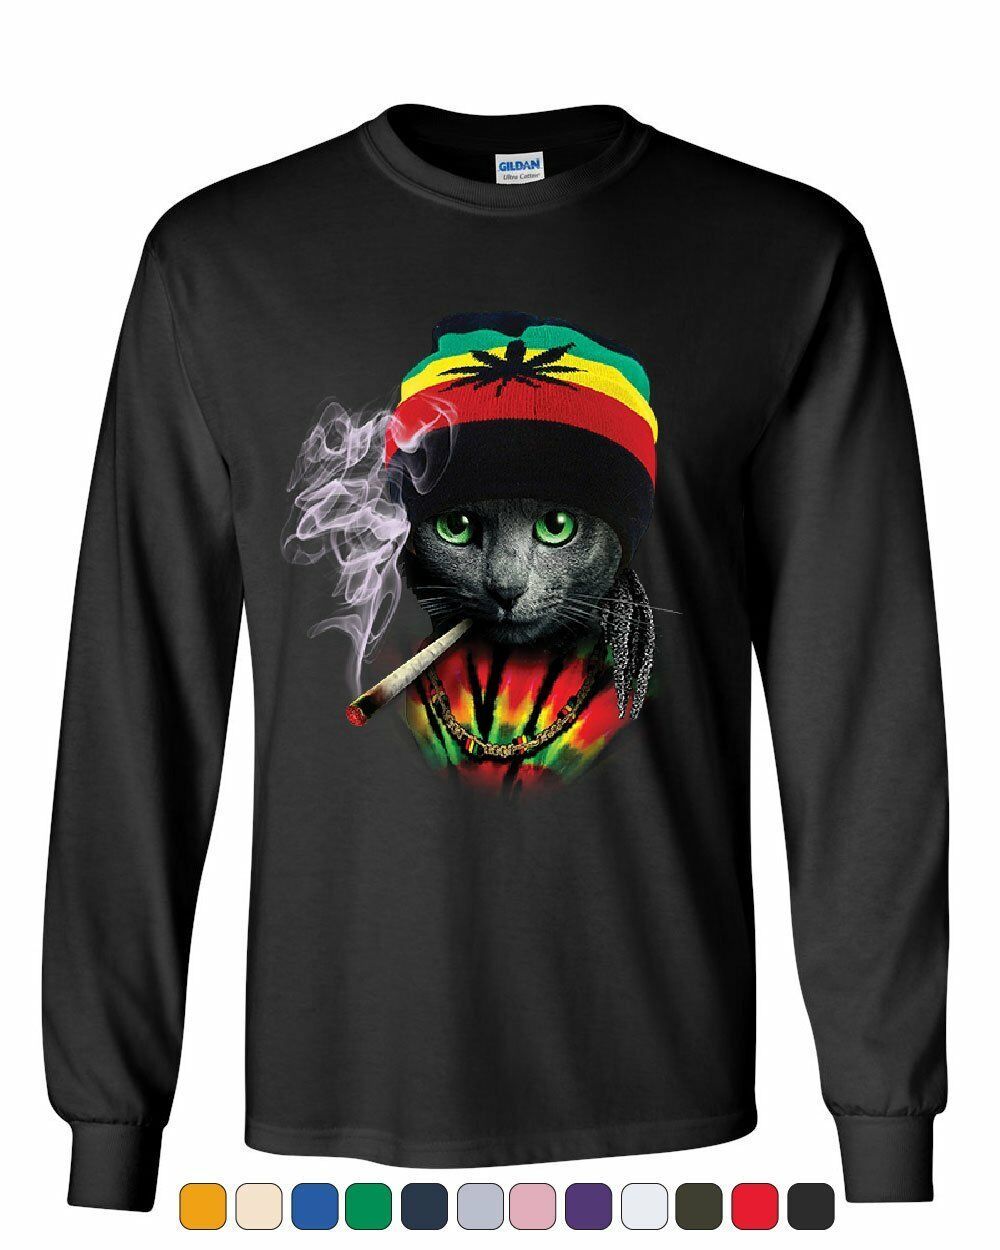 Rasta Cat Long Sleeve T-Shirt Smoking Joint 420 Jamaica Marijuana Pot Weed Tee